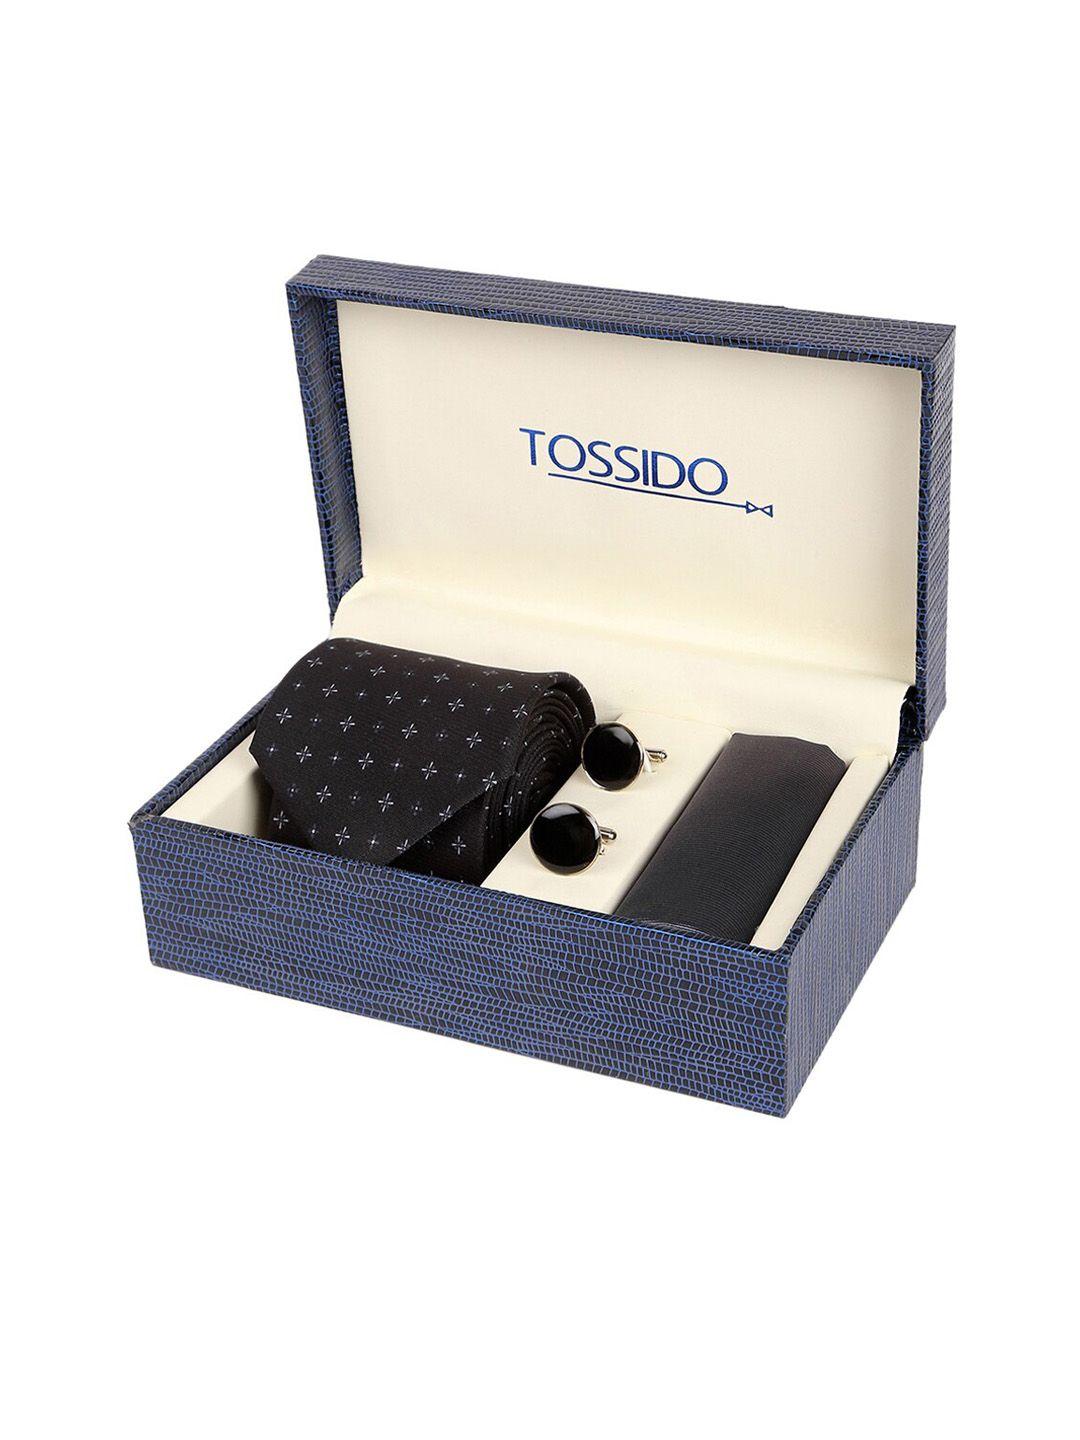 tossido men black & white microfiber accessory gift set